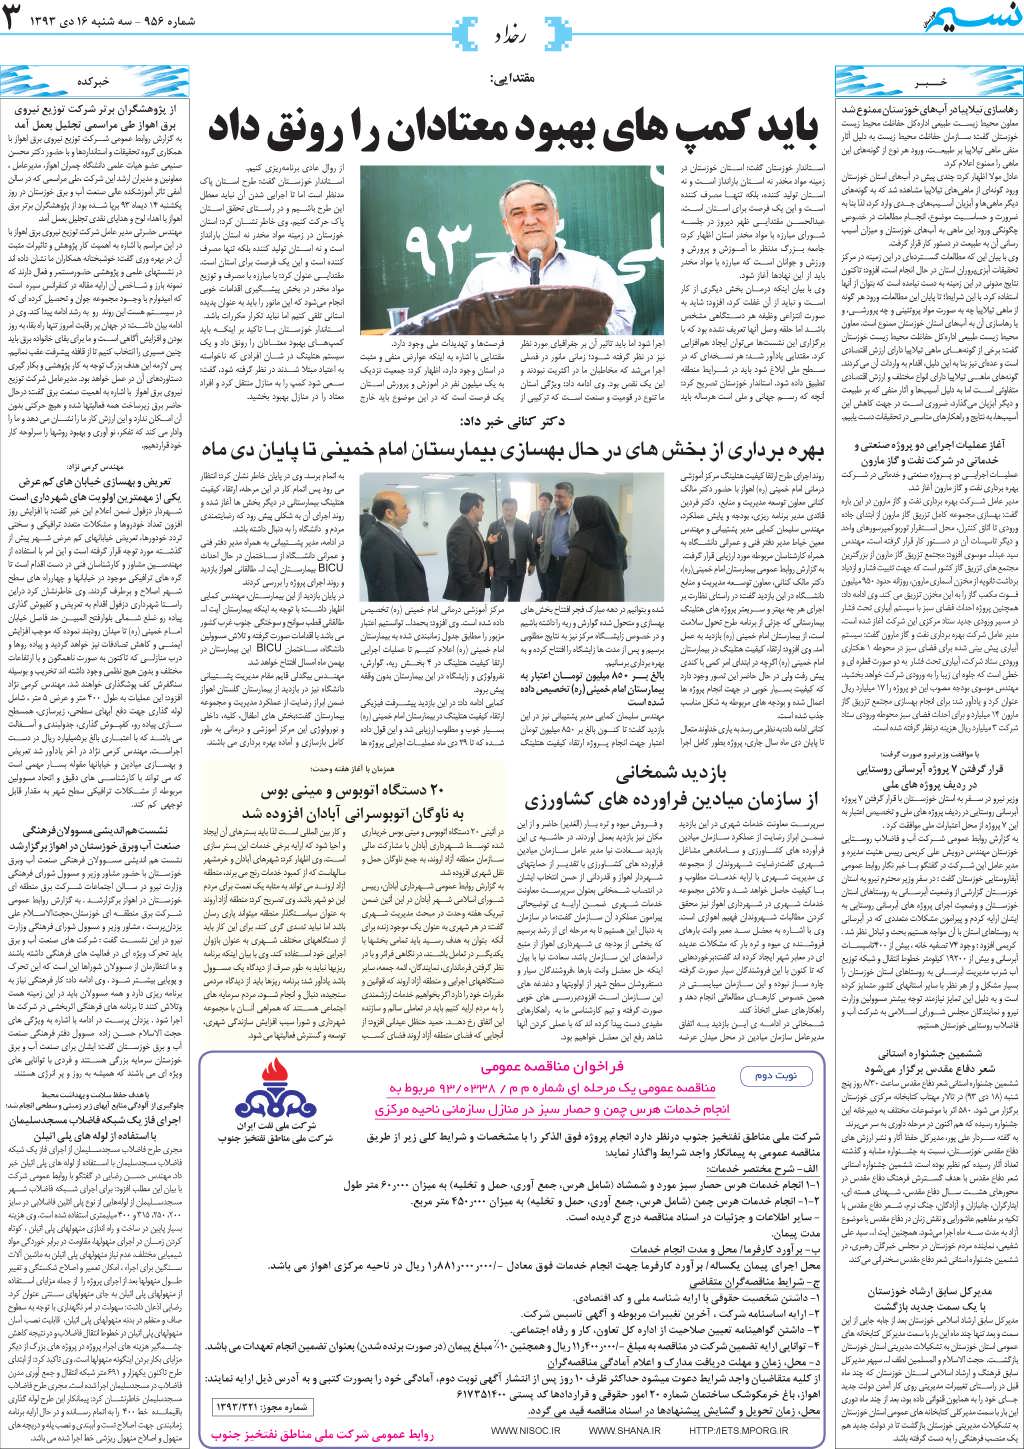 صفحه رخداد روزنامه نسیم شماره 956